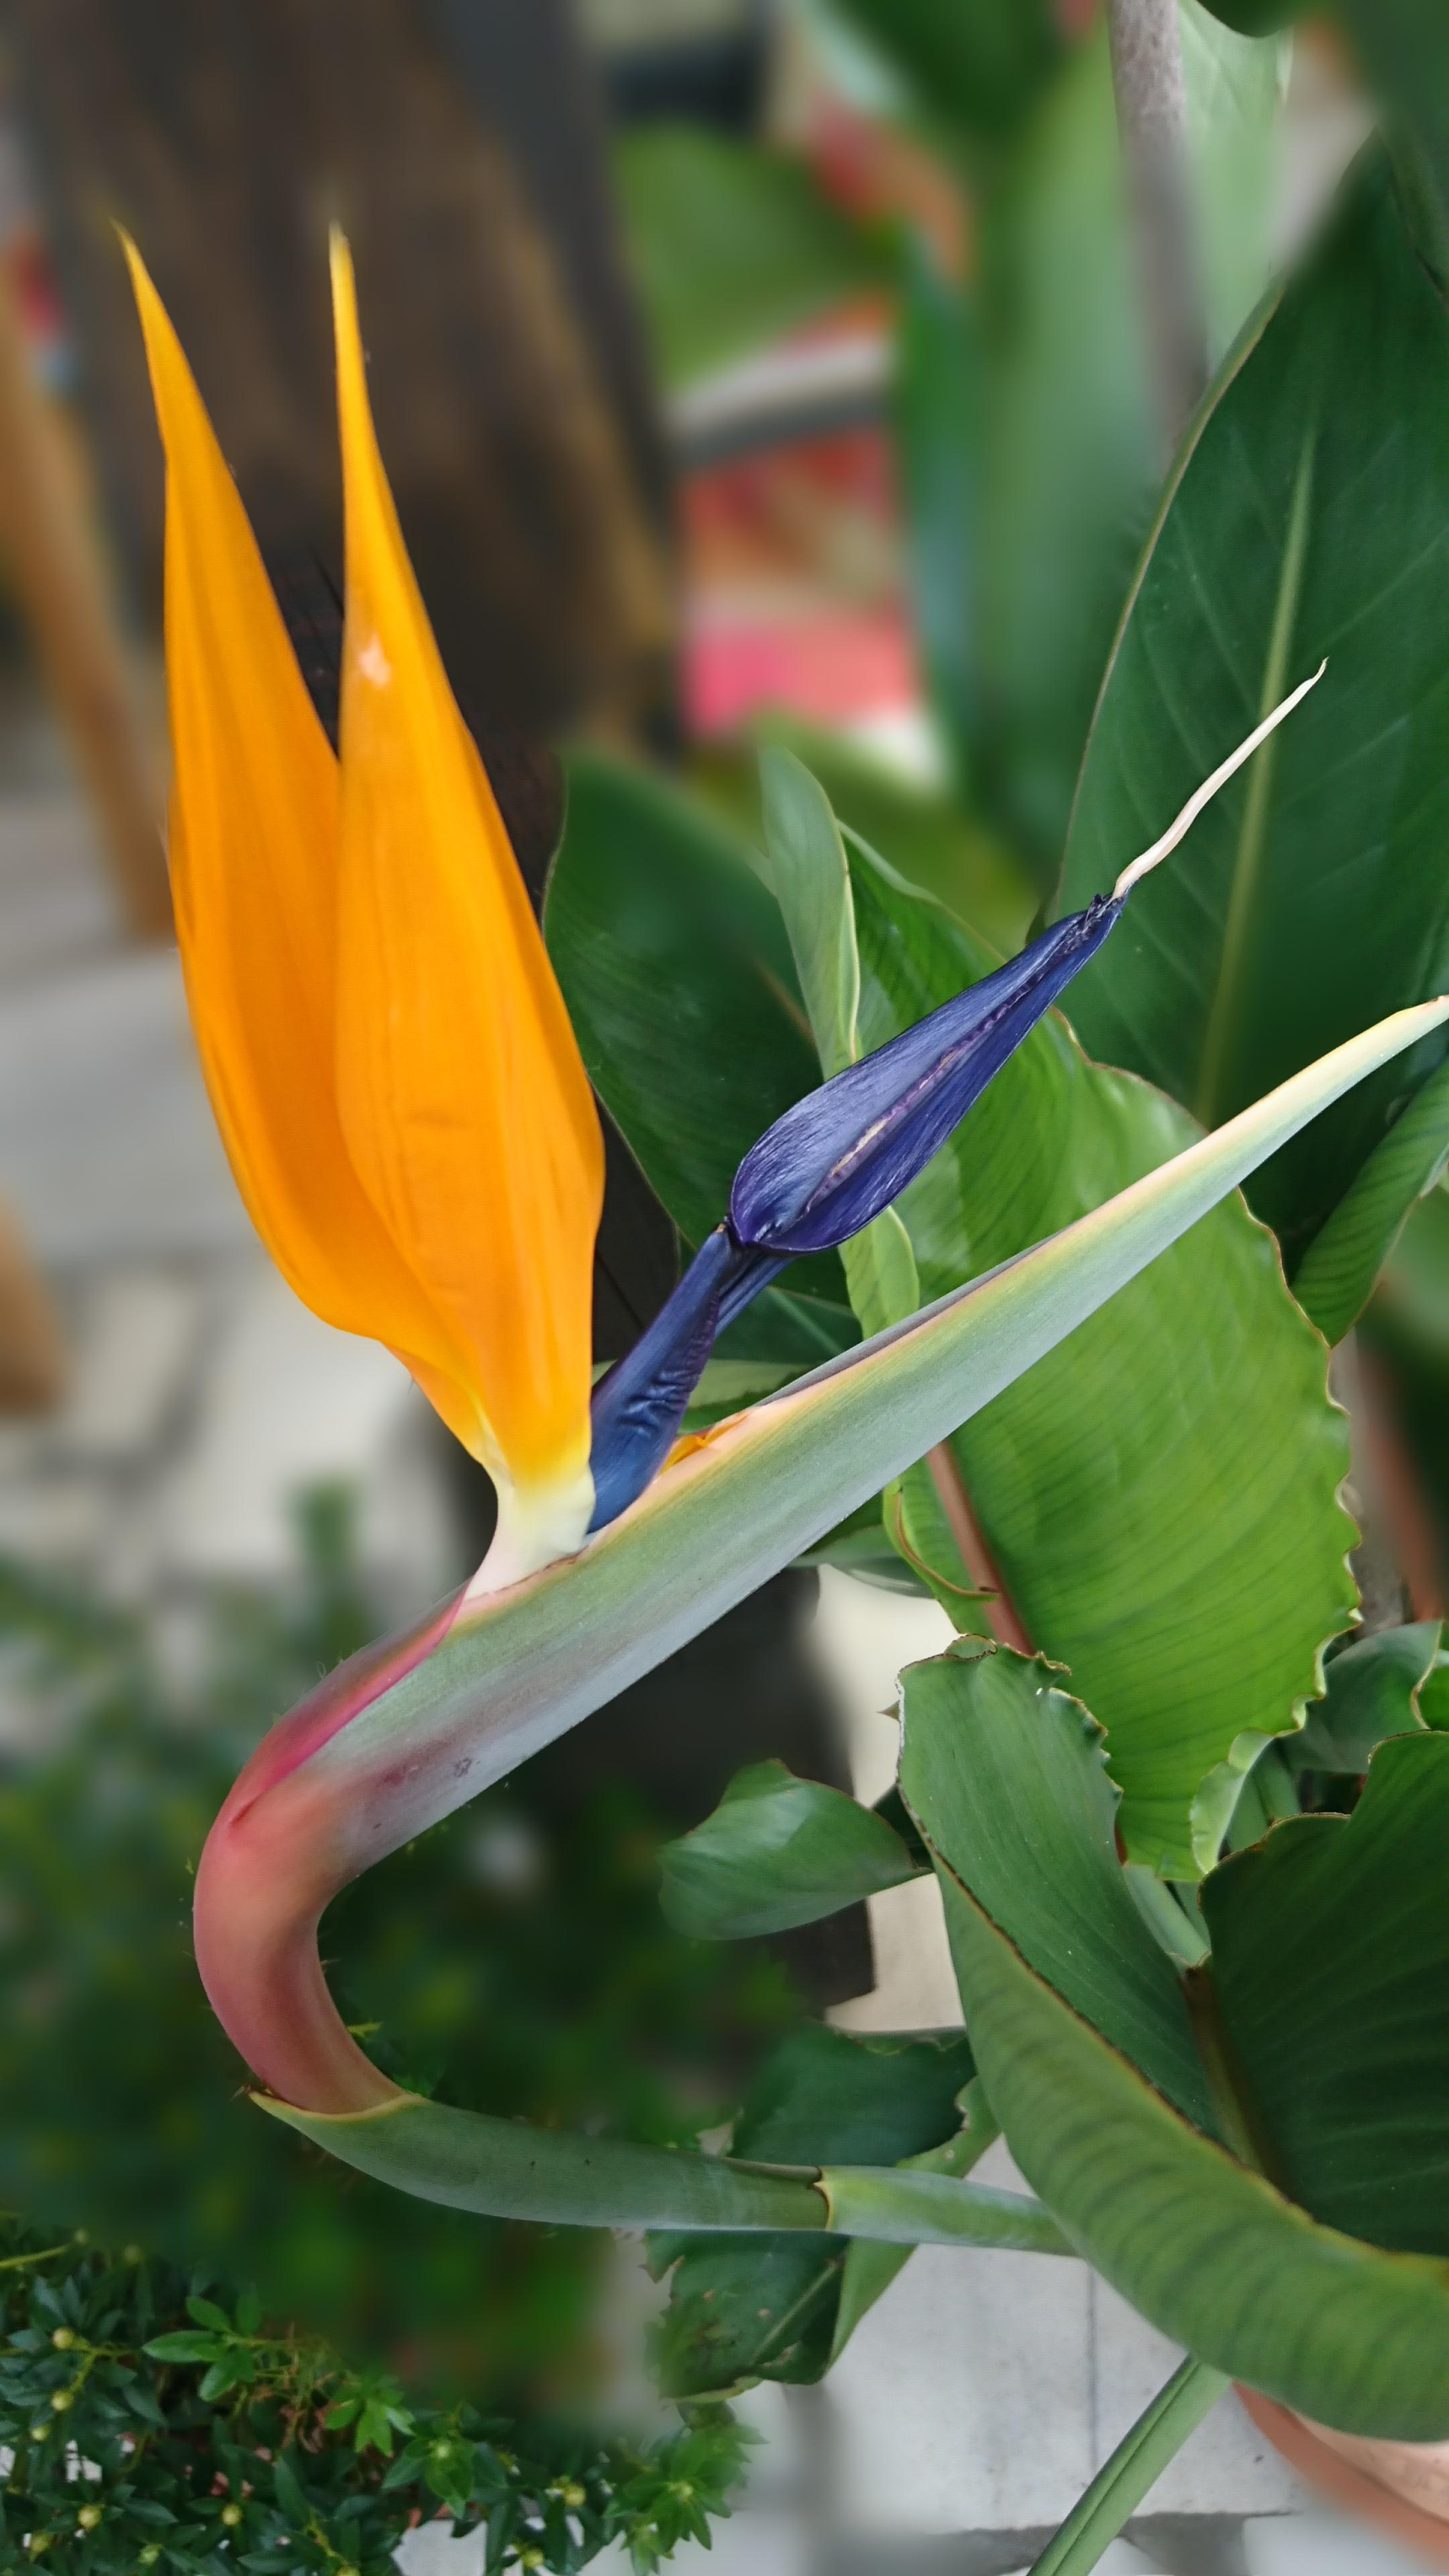 Das erste mal nach 10 Jahren dass unsere #strelizie #paradiesvogelblume blüht 😍